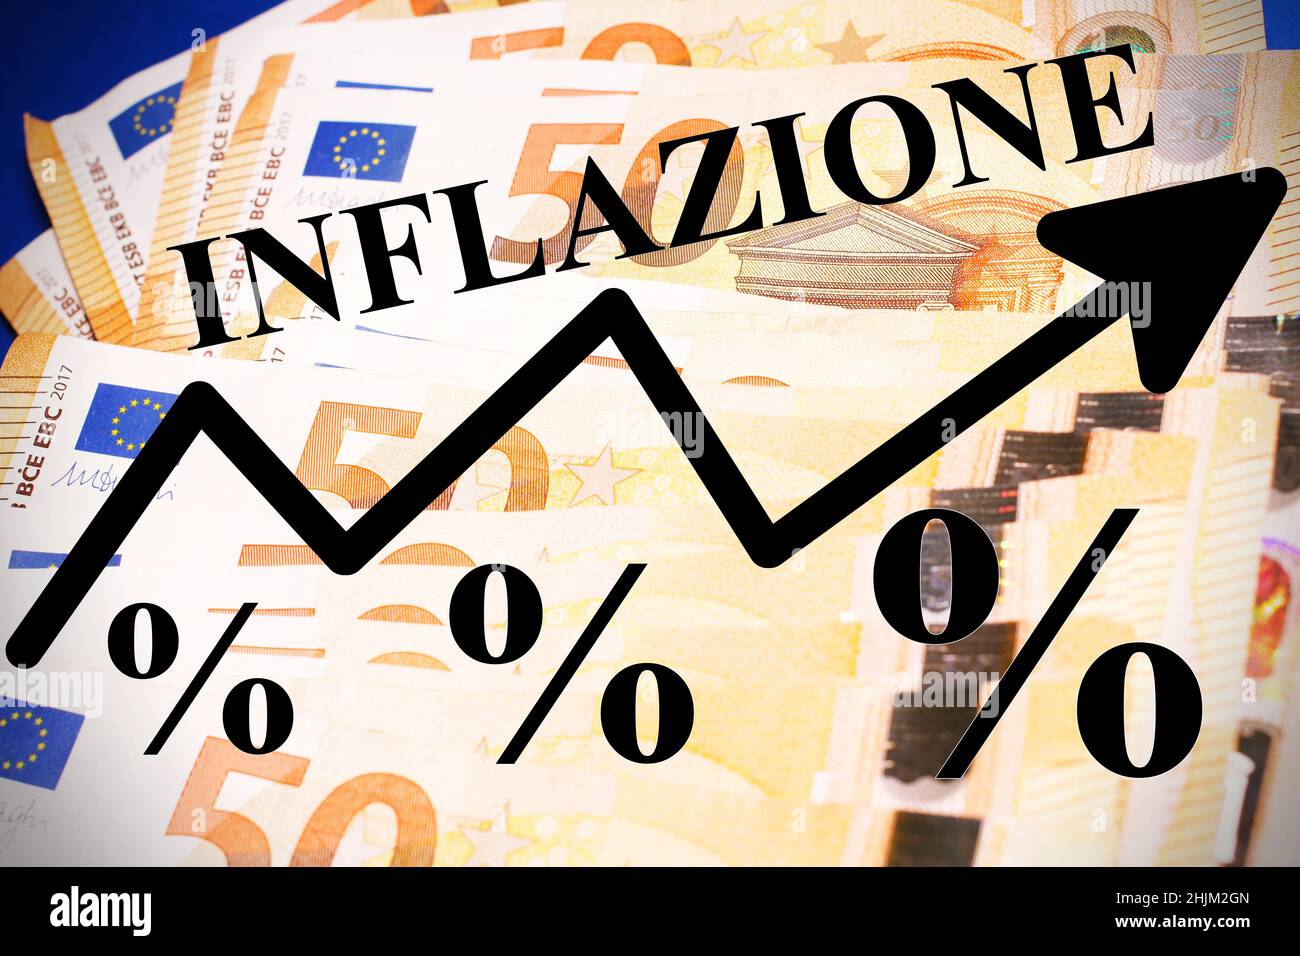 Billets en euros avec le texte 'Inflazione' , mot italien se traduisant par 'inflation' Banque D'Images